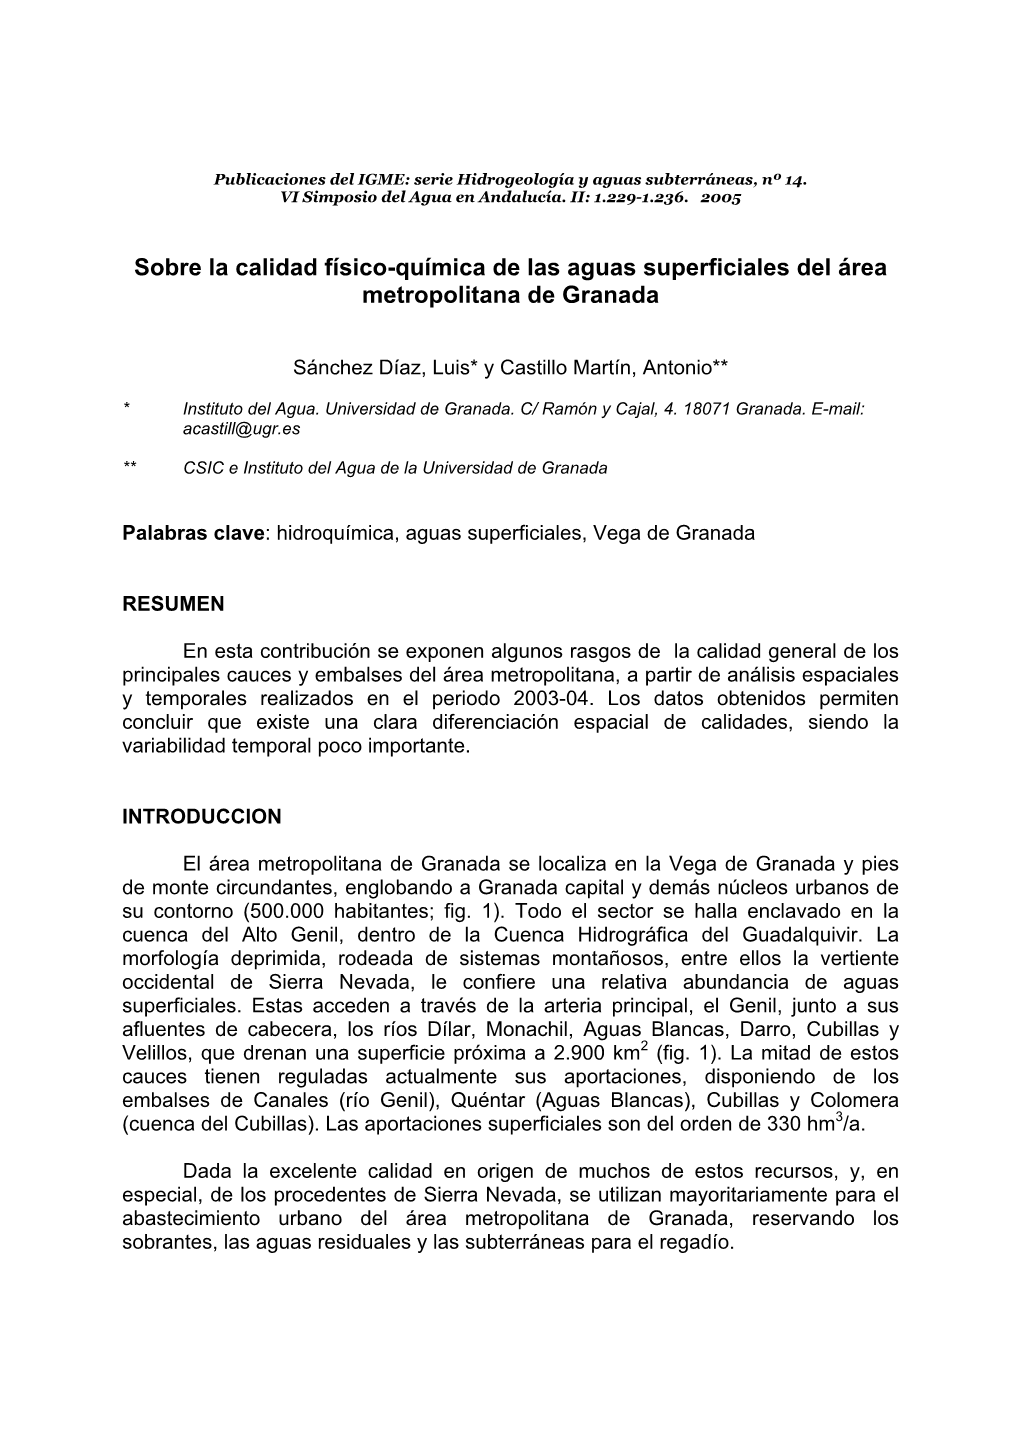 Sobre La Calidad Físico-Química De Las Aguas Superficiales Del Área Metropolitana De Granada